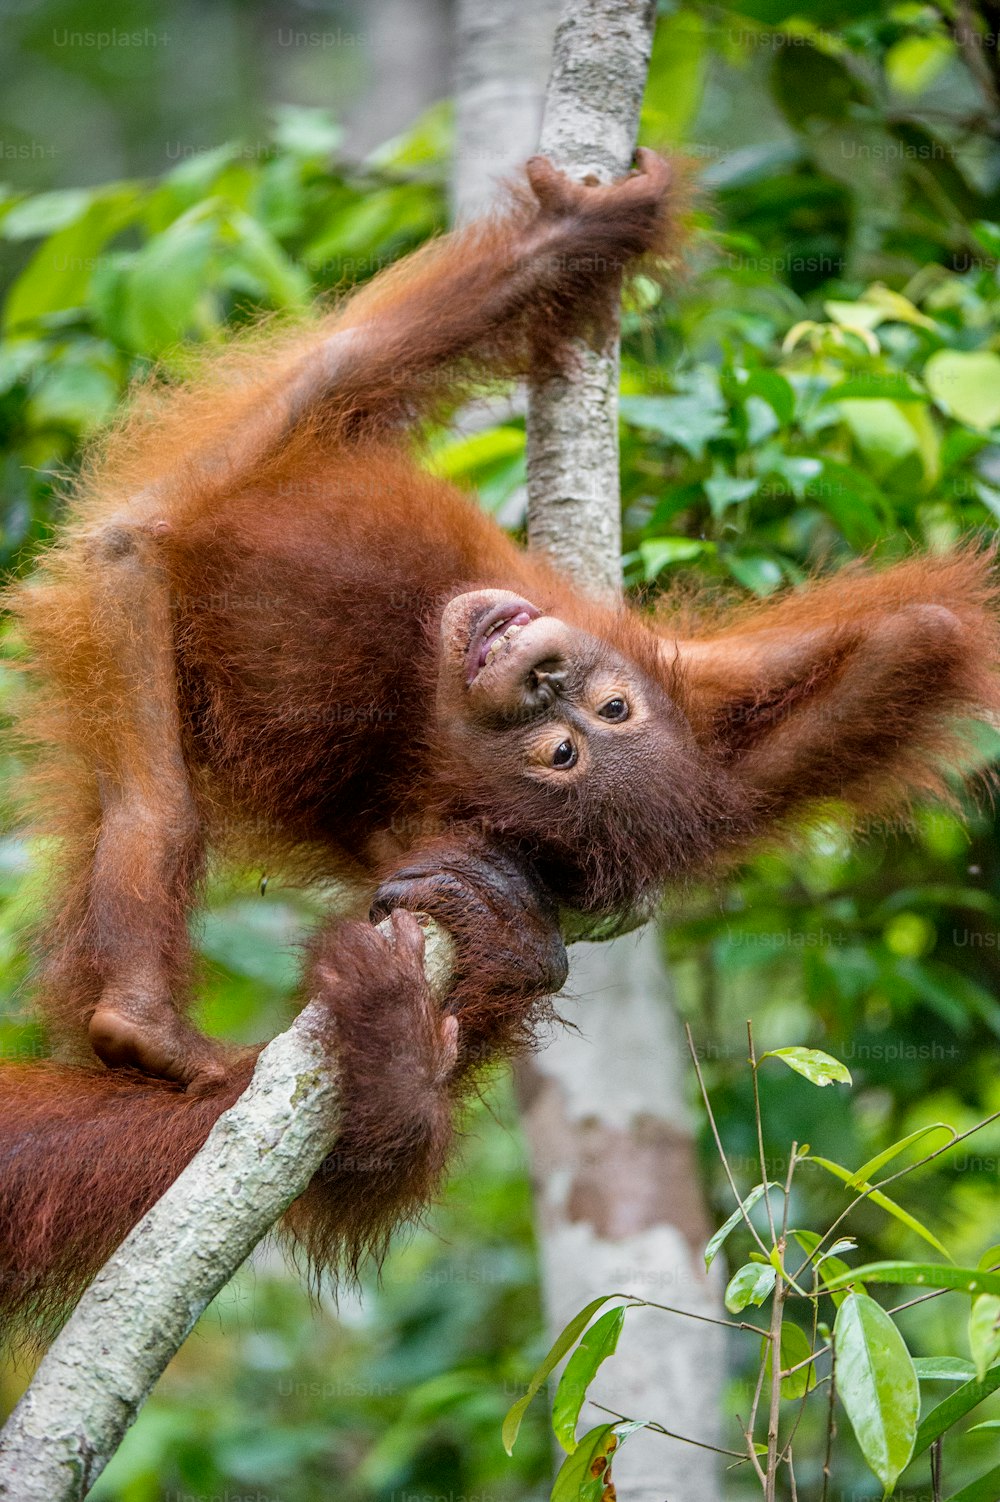 Baby orangutang in a natural habitat. Bornean orangutan (Pongo  pygmaeus wurmmbii) in the wild nature. Rainforest of Island Borneo. Indonesia.